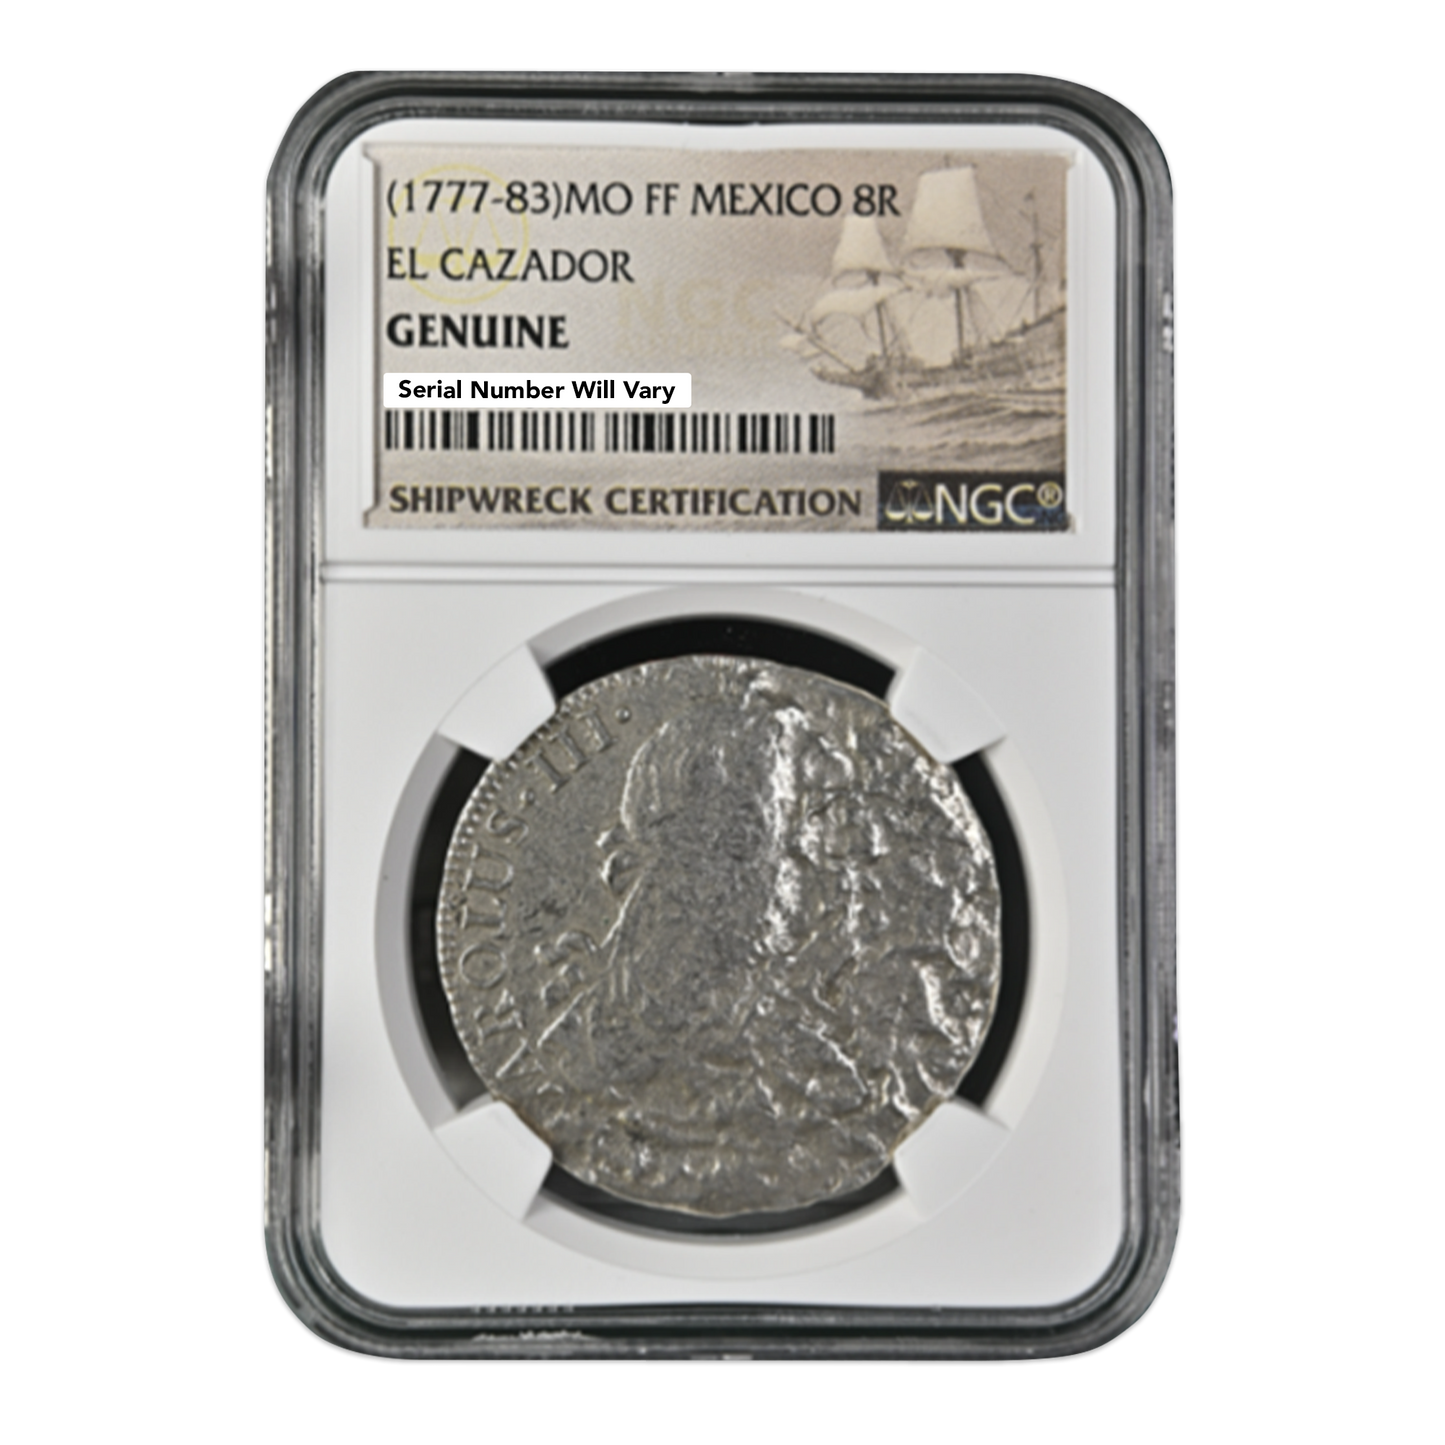 (1772-1783) Mexico 8R Silver El Cazador Shipwreck Coin Genuine